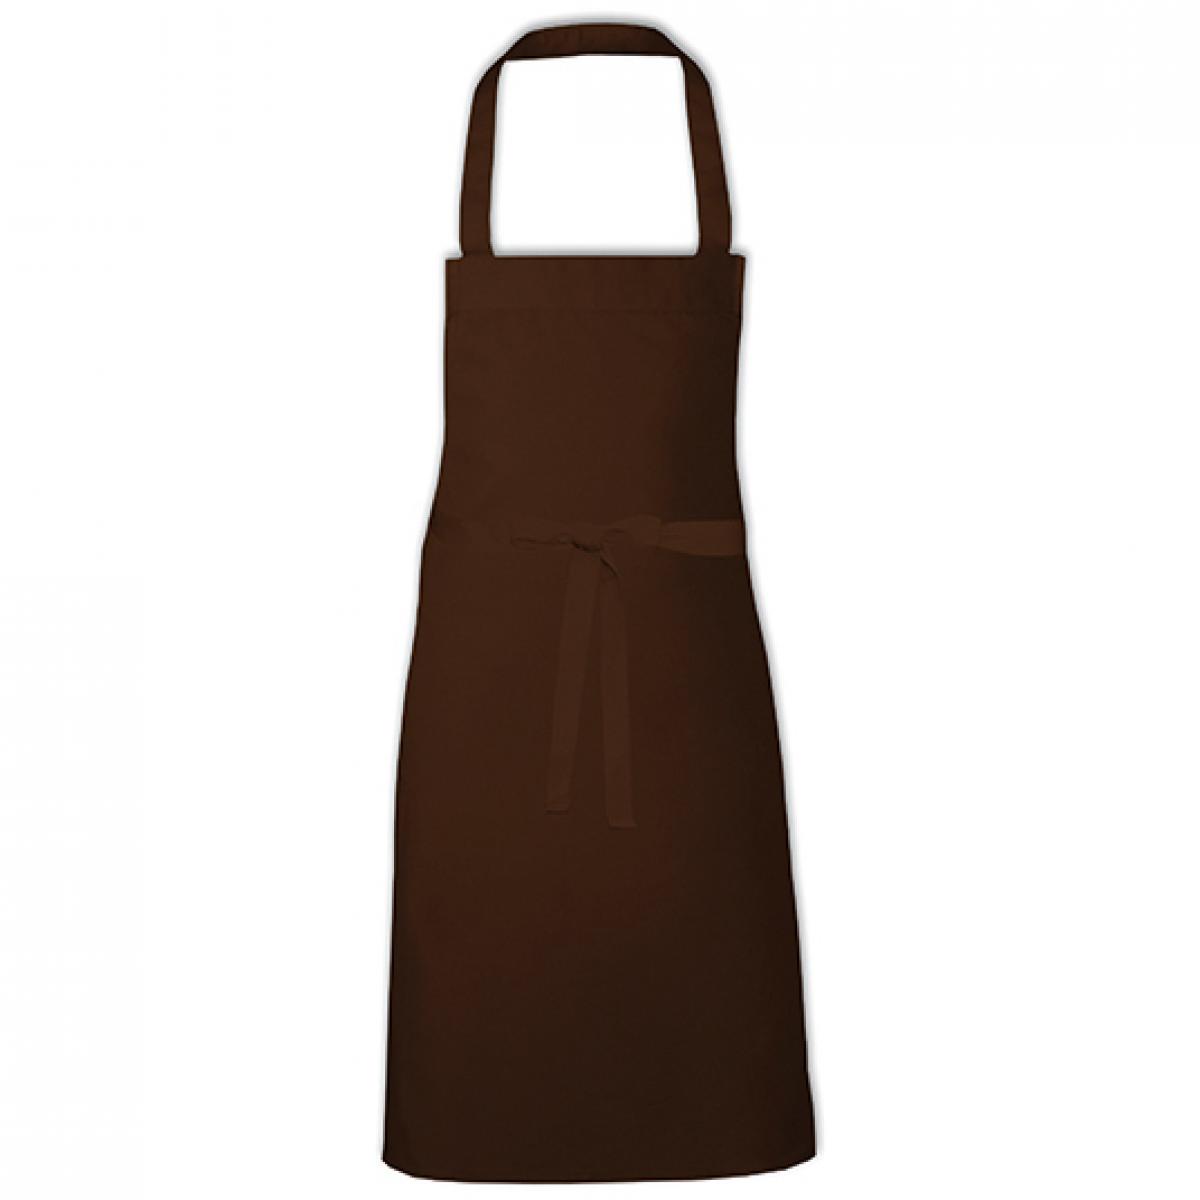 Hersteller: Link Kitchen Wear Herstellernummer: BBQ8073 Artikelbezeichnung: Barbecue Apron - 73 x 80 cm - Waschbar bis 60 °C Farbe: Brown